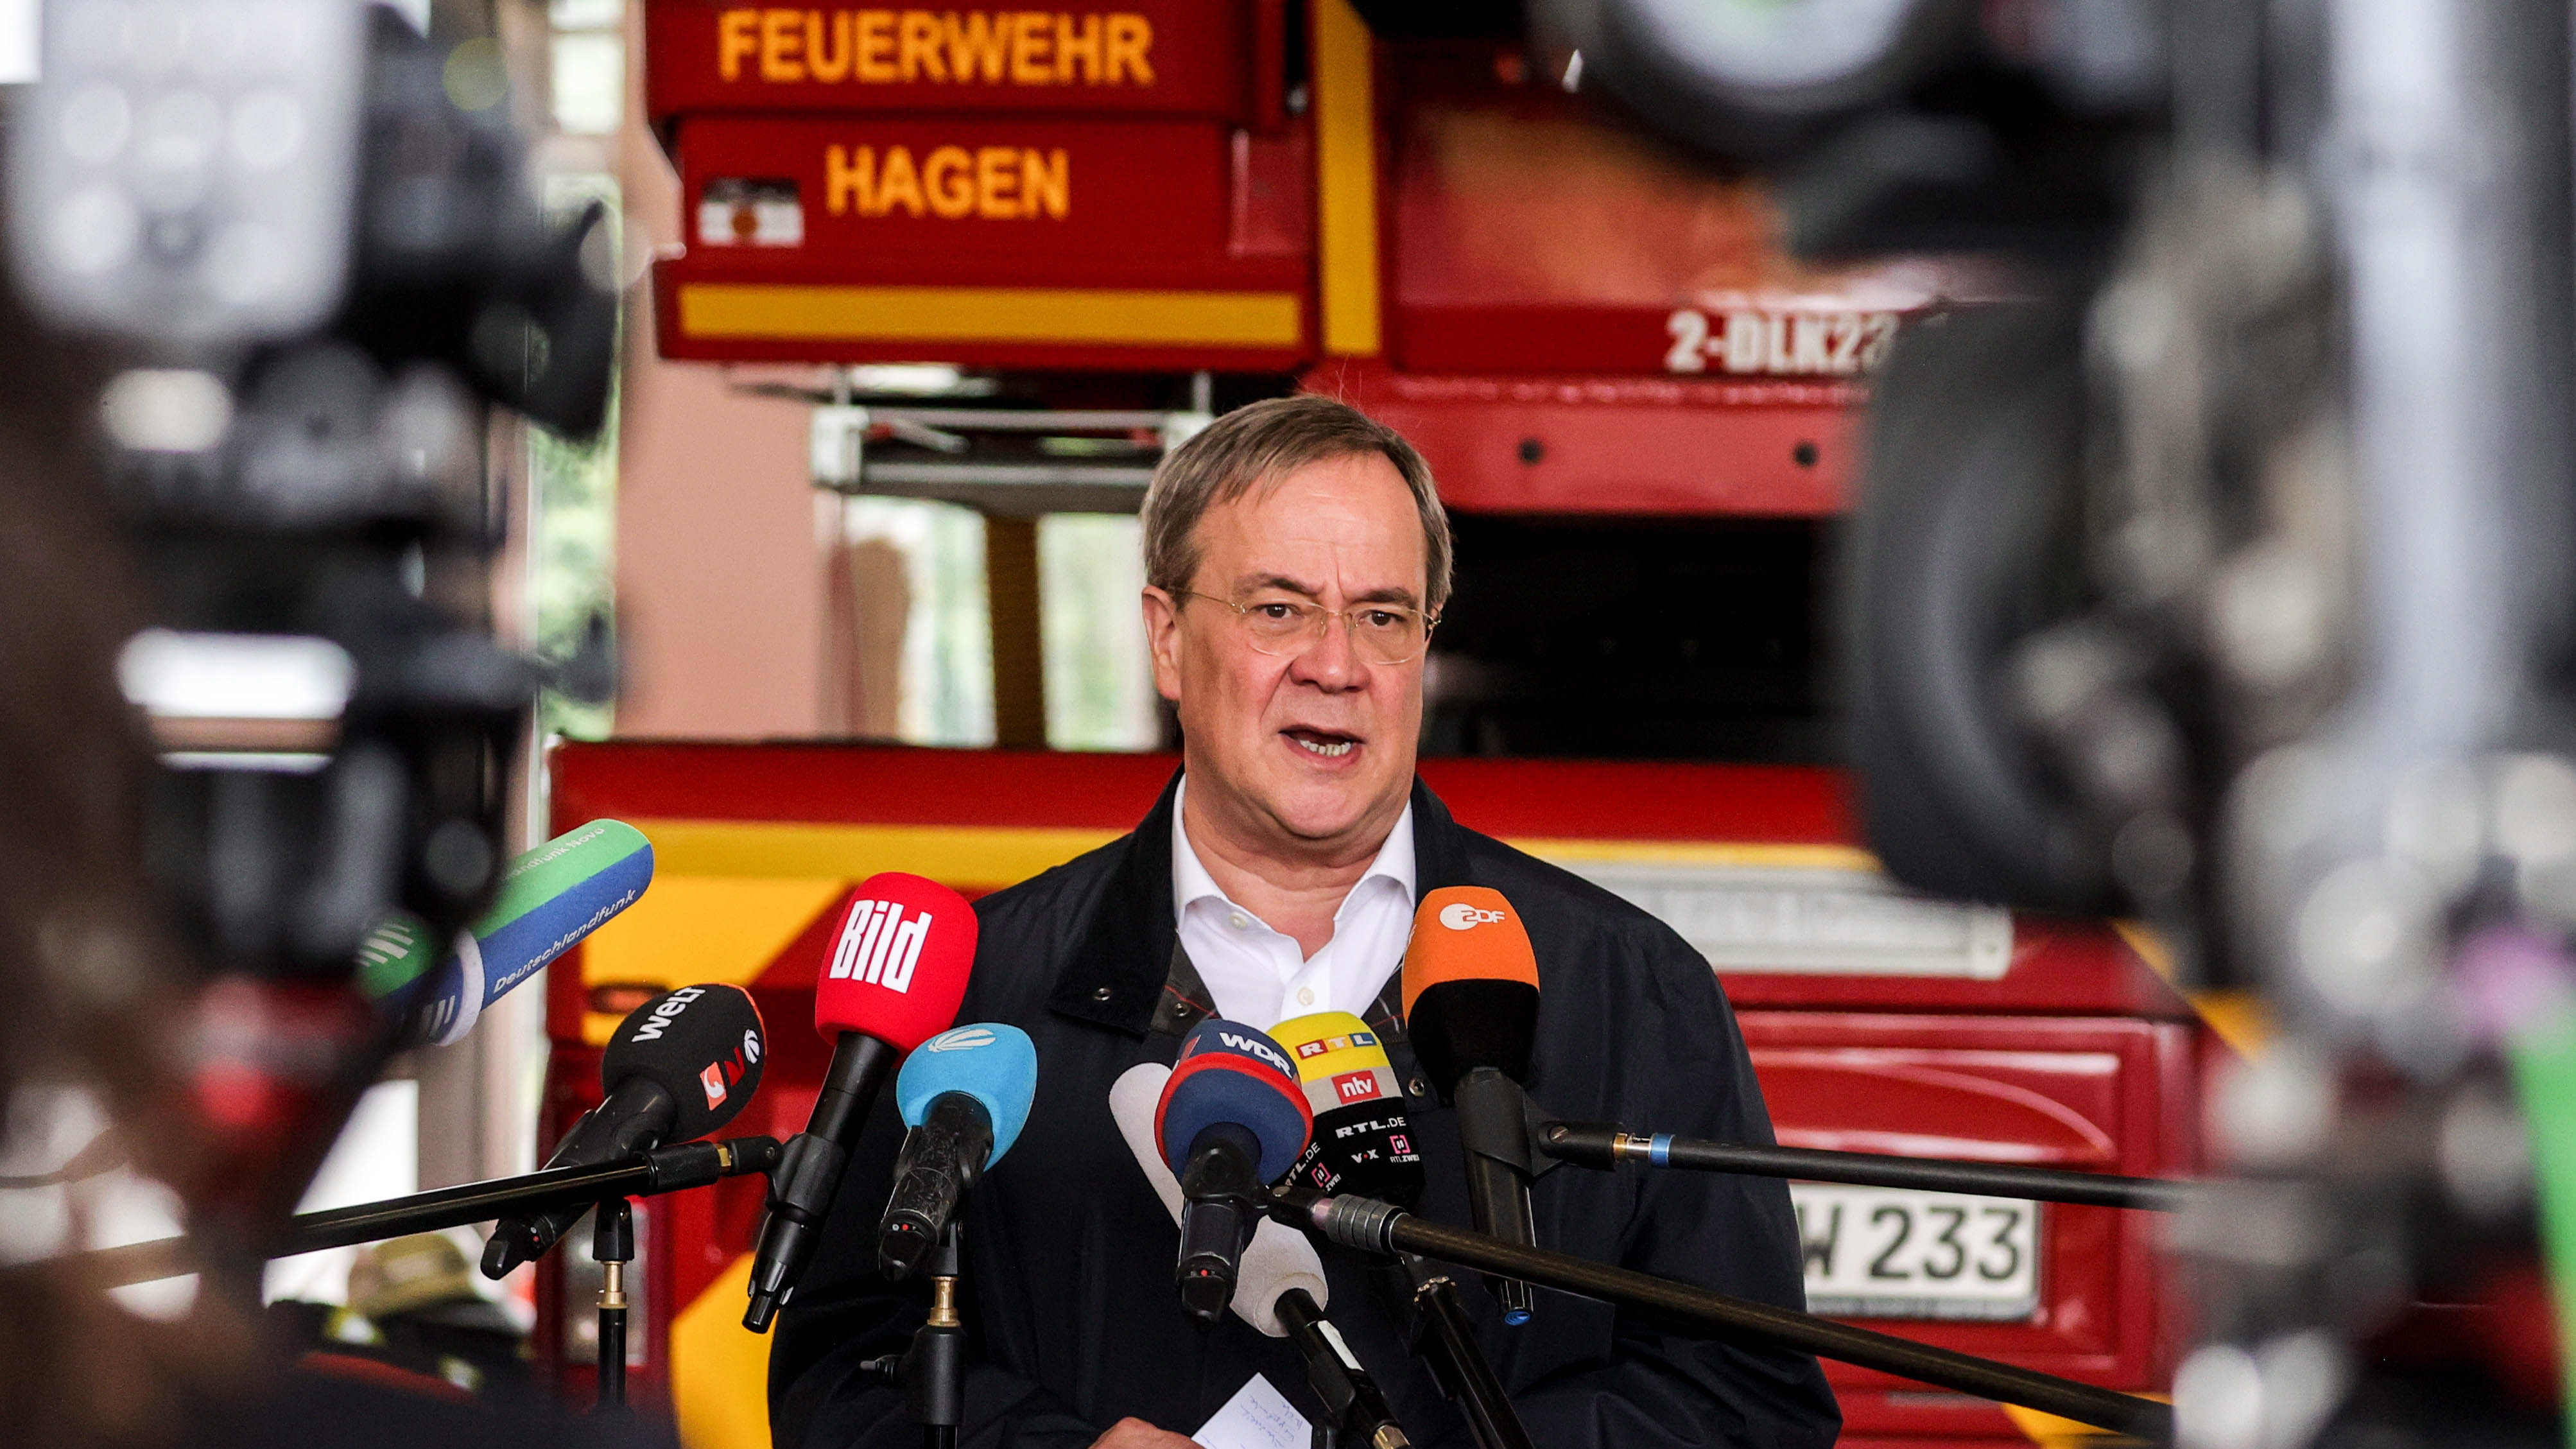 Armin Laschet spricht bei der Feuerwehr in Hagen nach dem Unwetter. | EPA